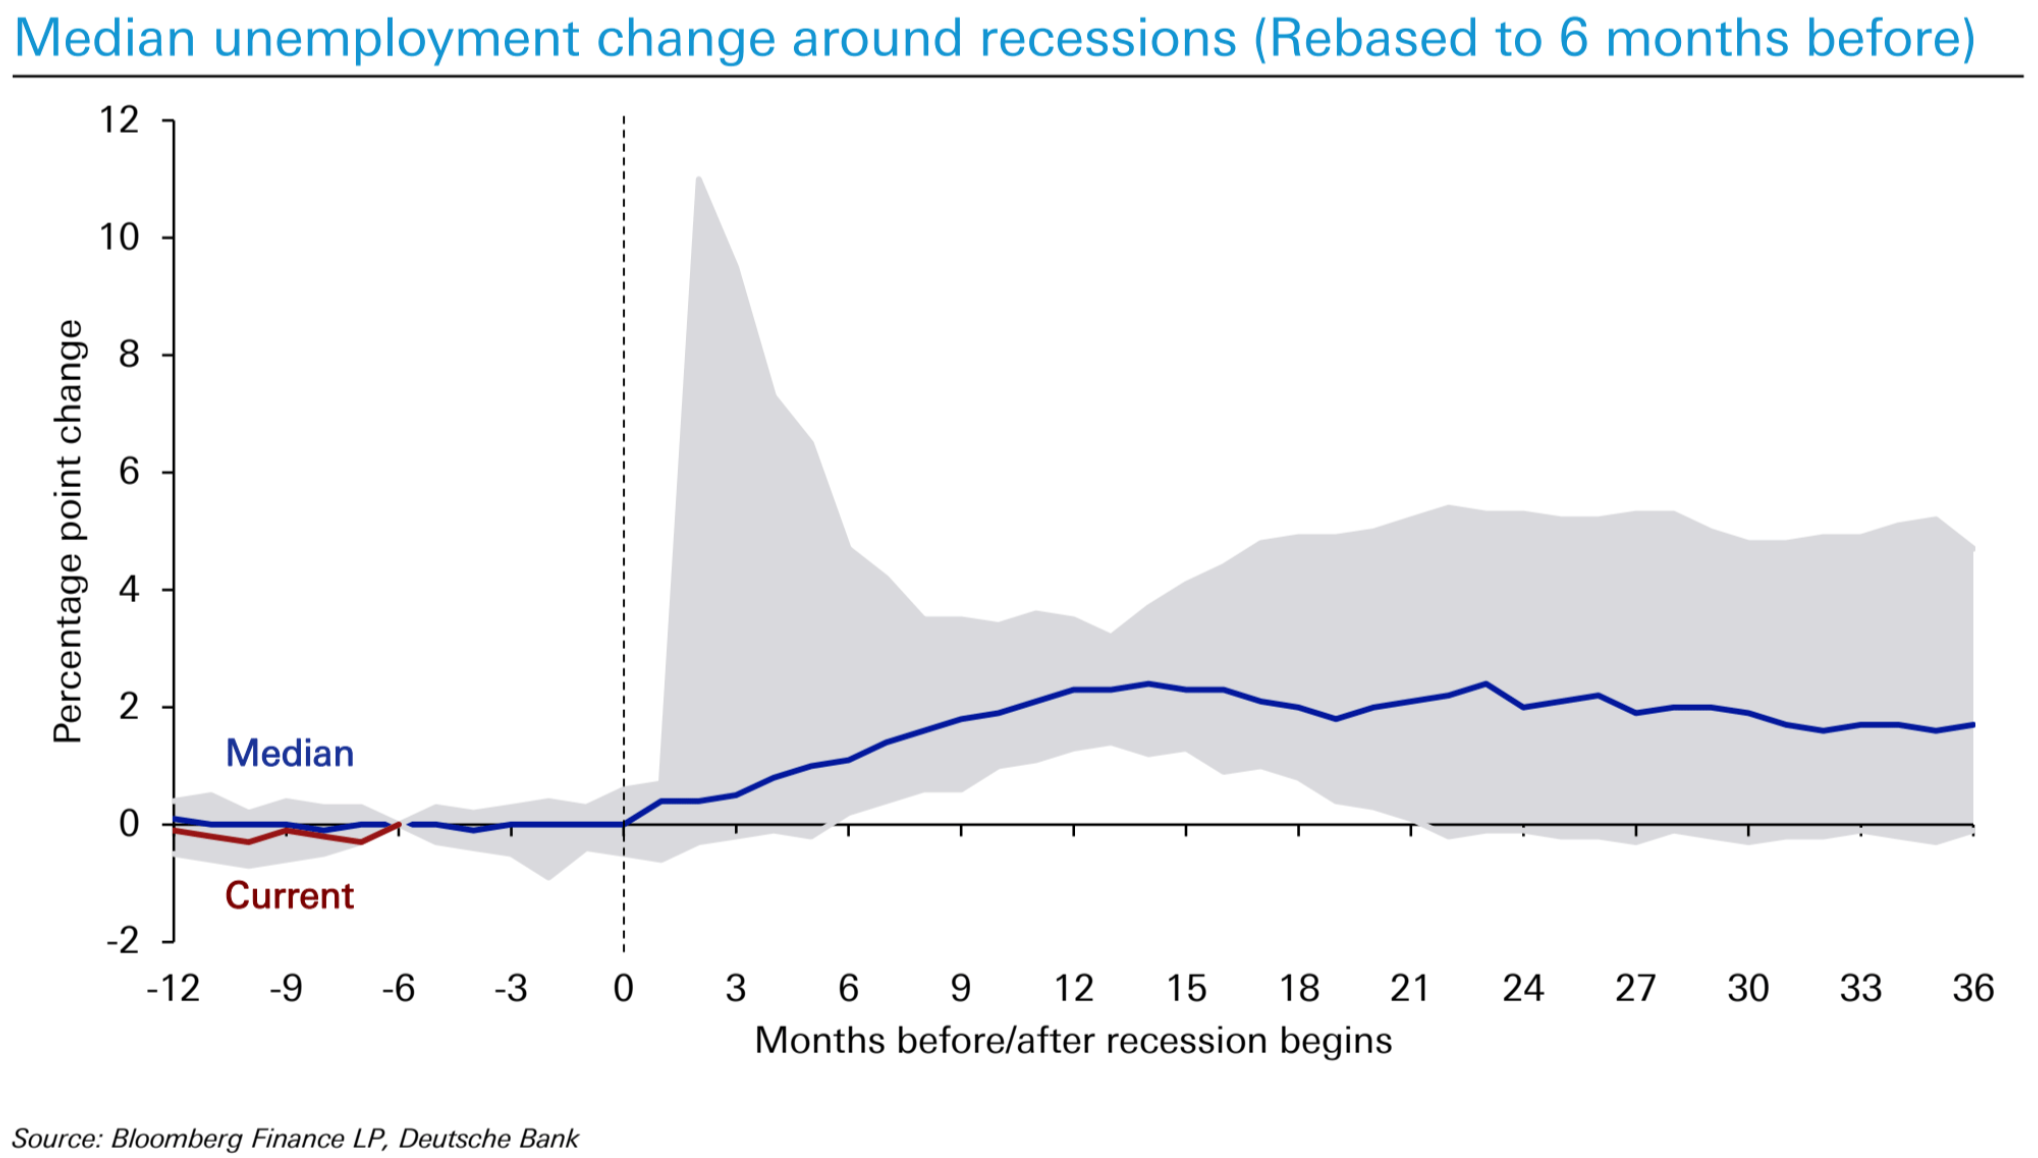 Historical Unemployment Trend Prior to Recession - Deutsche Bank